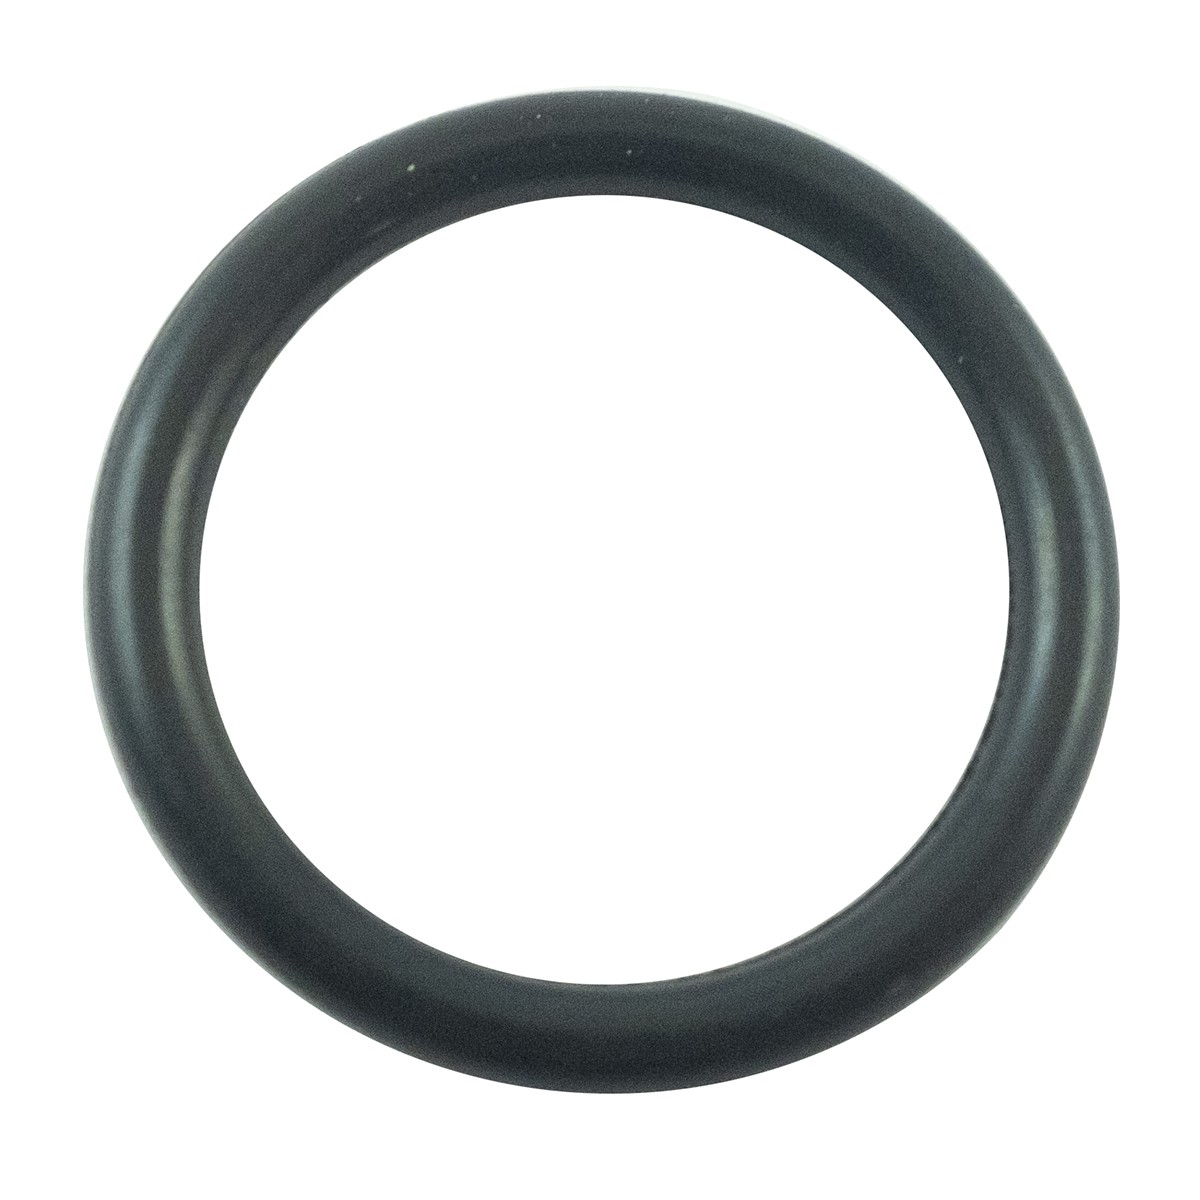 O-ring 17.50 x 2.40 mm / LS XJ 25 / LS MT1.25 / LS MT3.35 / LS MT3.40 / LS MT3.50 / LS MT3.60 / S801018010 / 40029206